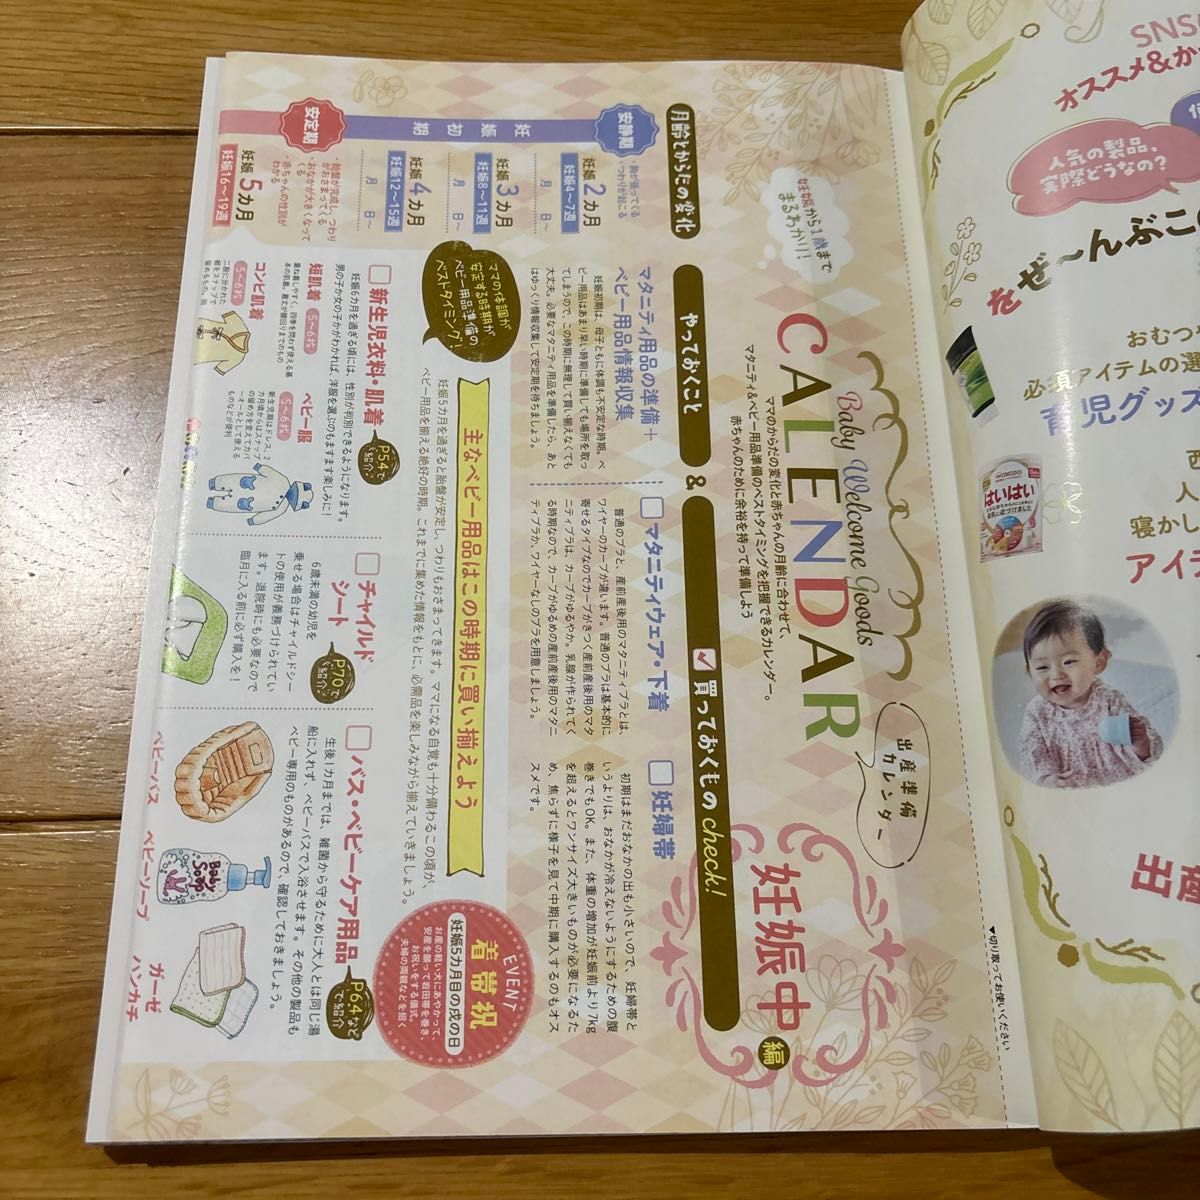 【完全ガイドシリーズ364】LDK Baby ベビー用品完全ガイド